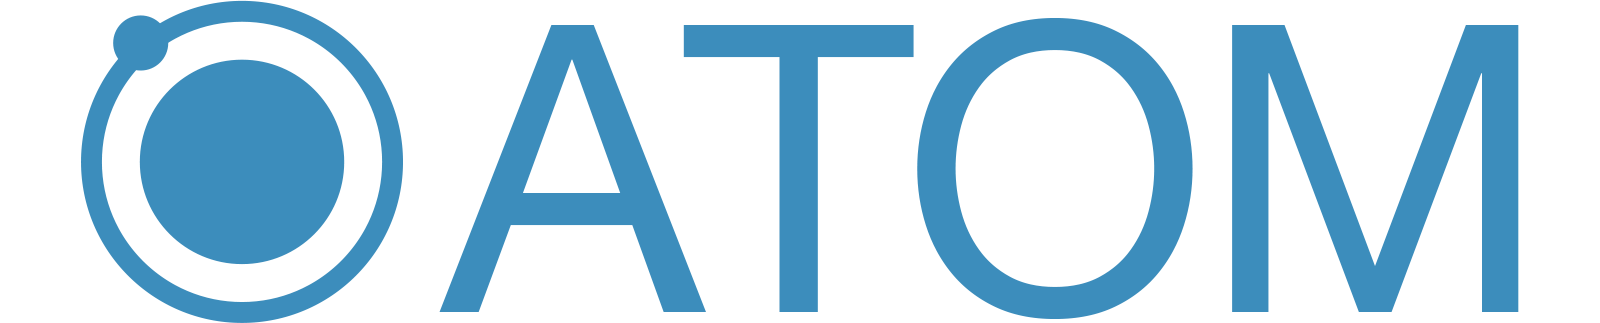 テクロコの広告運用管理プラットフォーム「ATOM」、自動運用システムの提供を開始